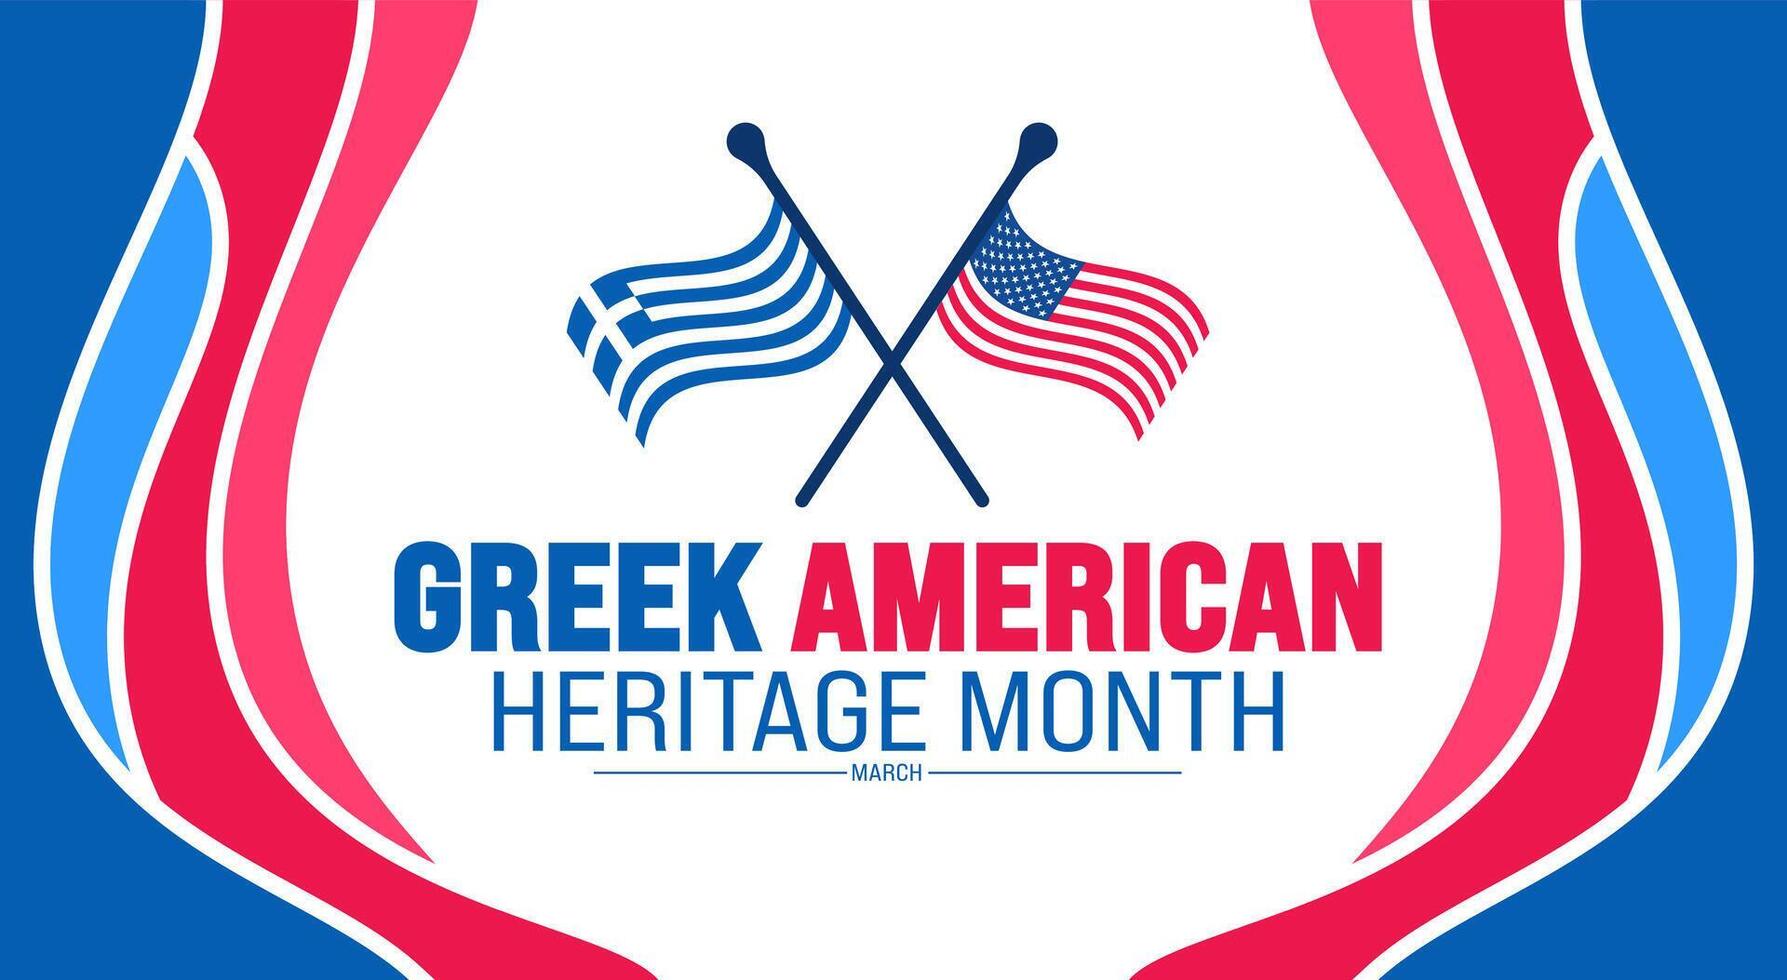 marzo è greco americano eredità mese sfondo design modello con greco e Stati Uniti d'America bandiera concetto. uso per sfondo, striscione, cartello, carta, e manifesto design modello. vettore illustrazione.